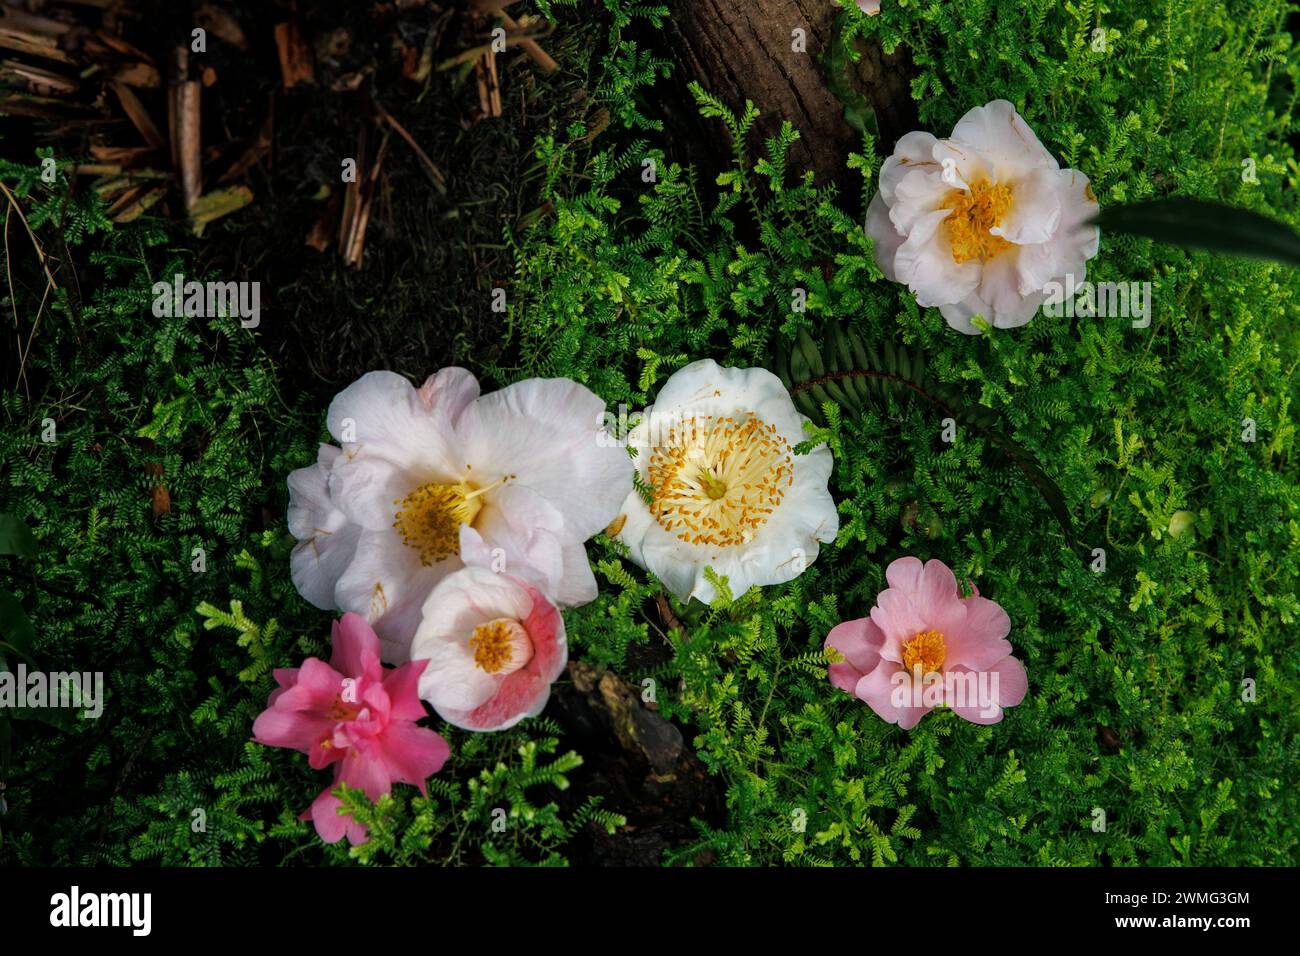 les camélias fleurissent dans la mousse. Kamelienblueten (Camellia) liegen im Moos. Banque D'Images